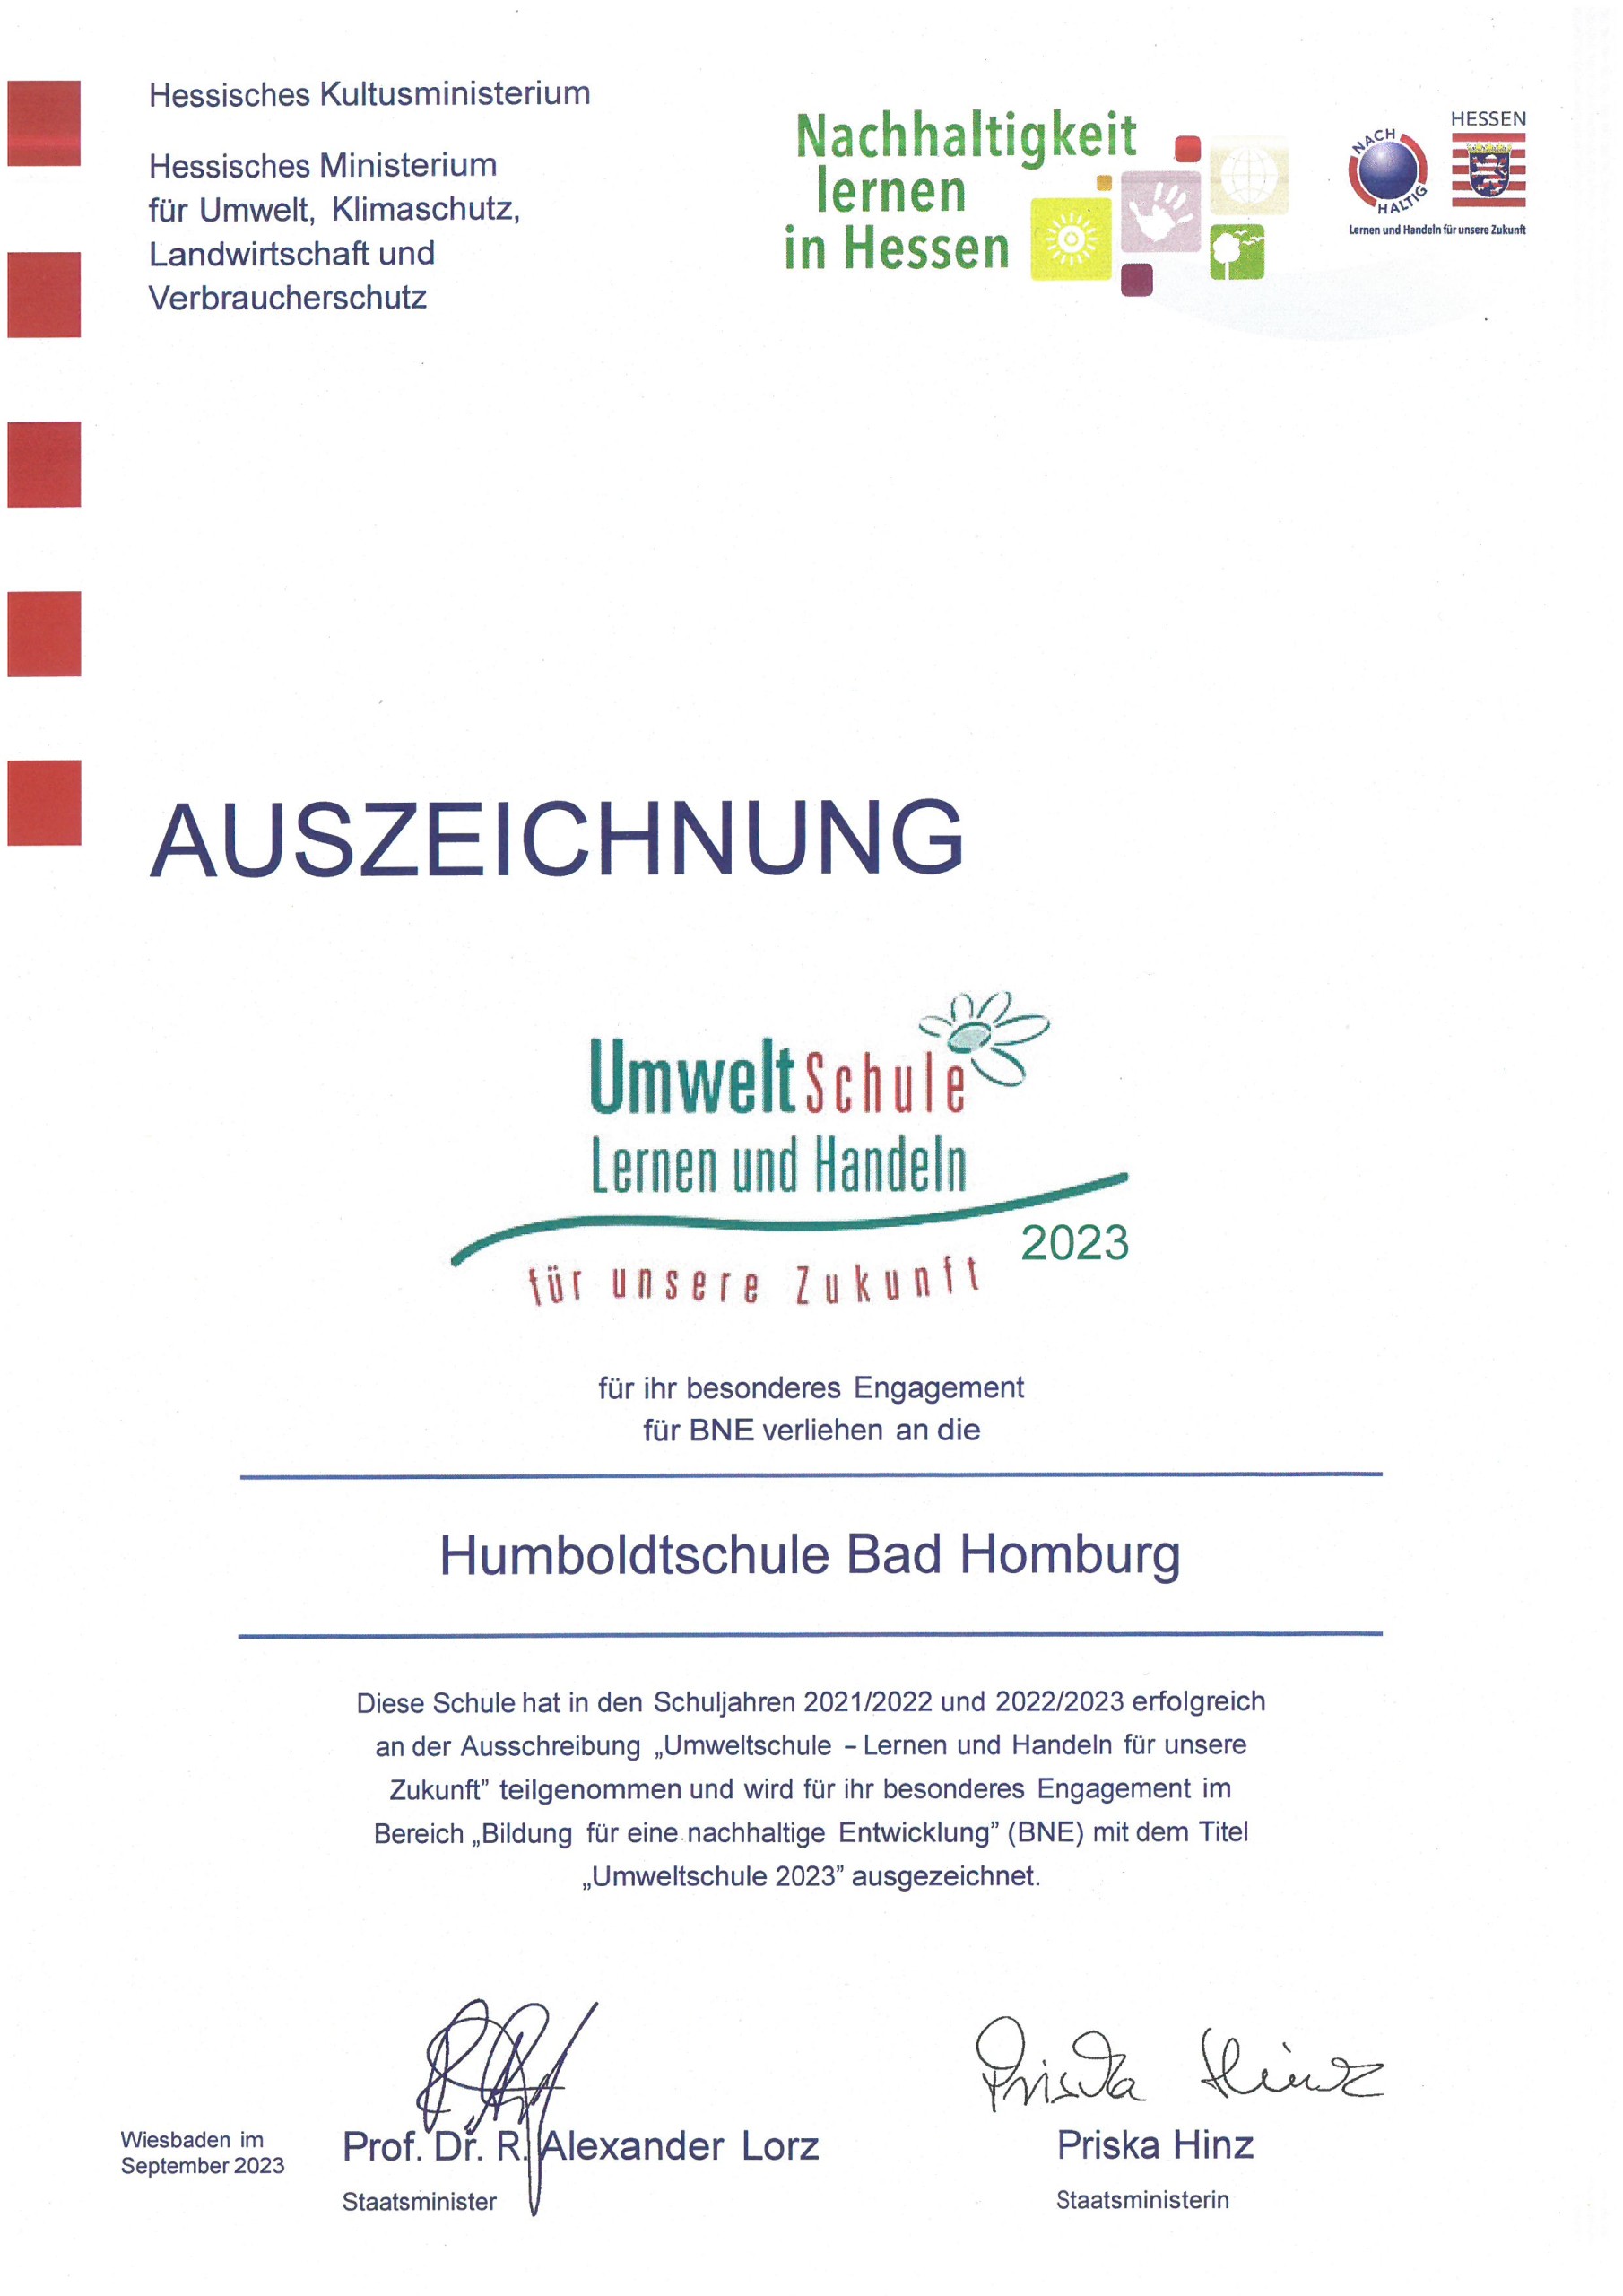 Urkunde "Umweltschule" 2017